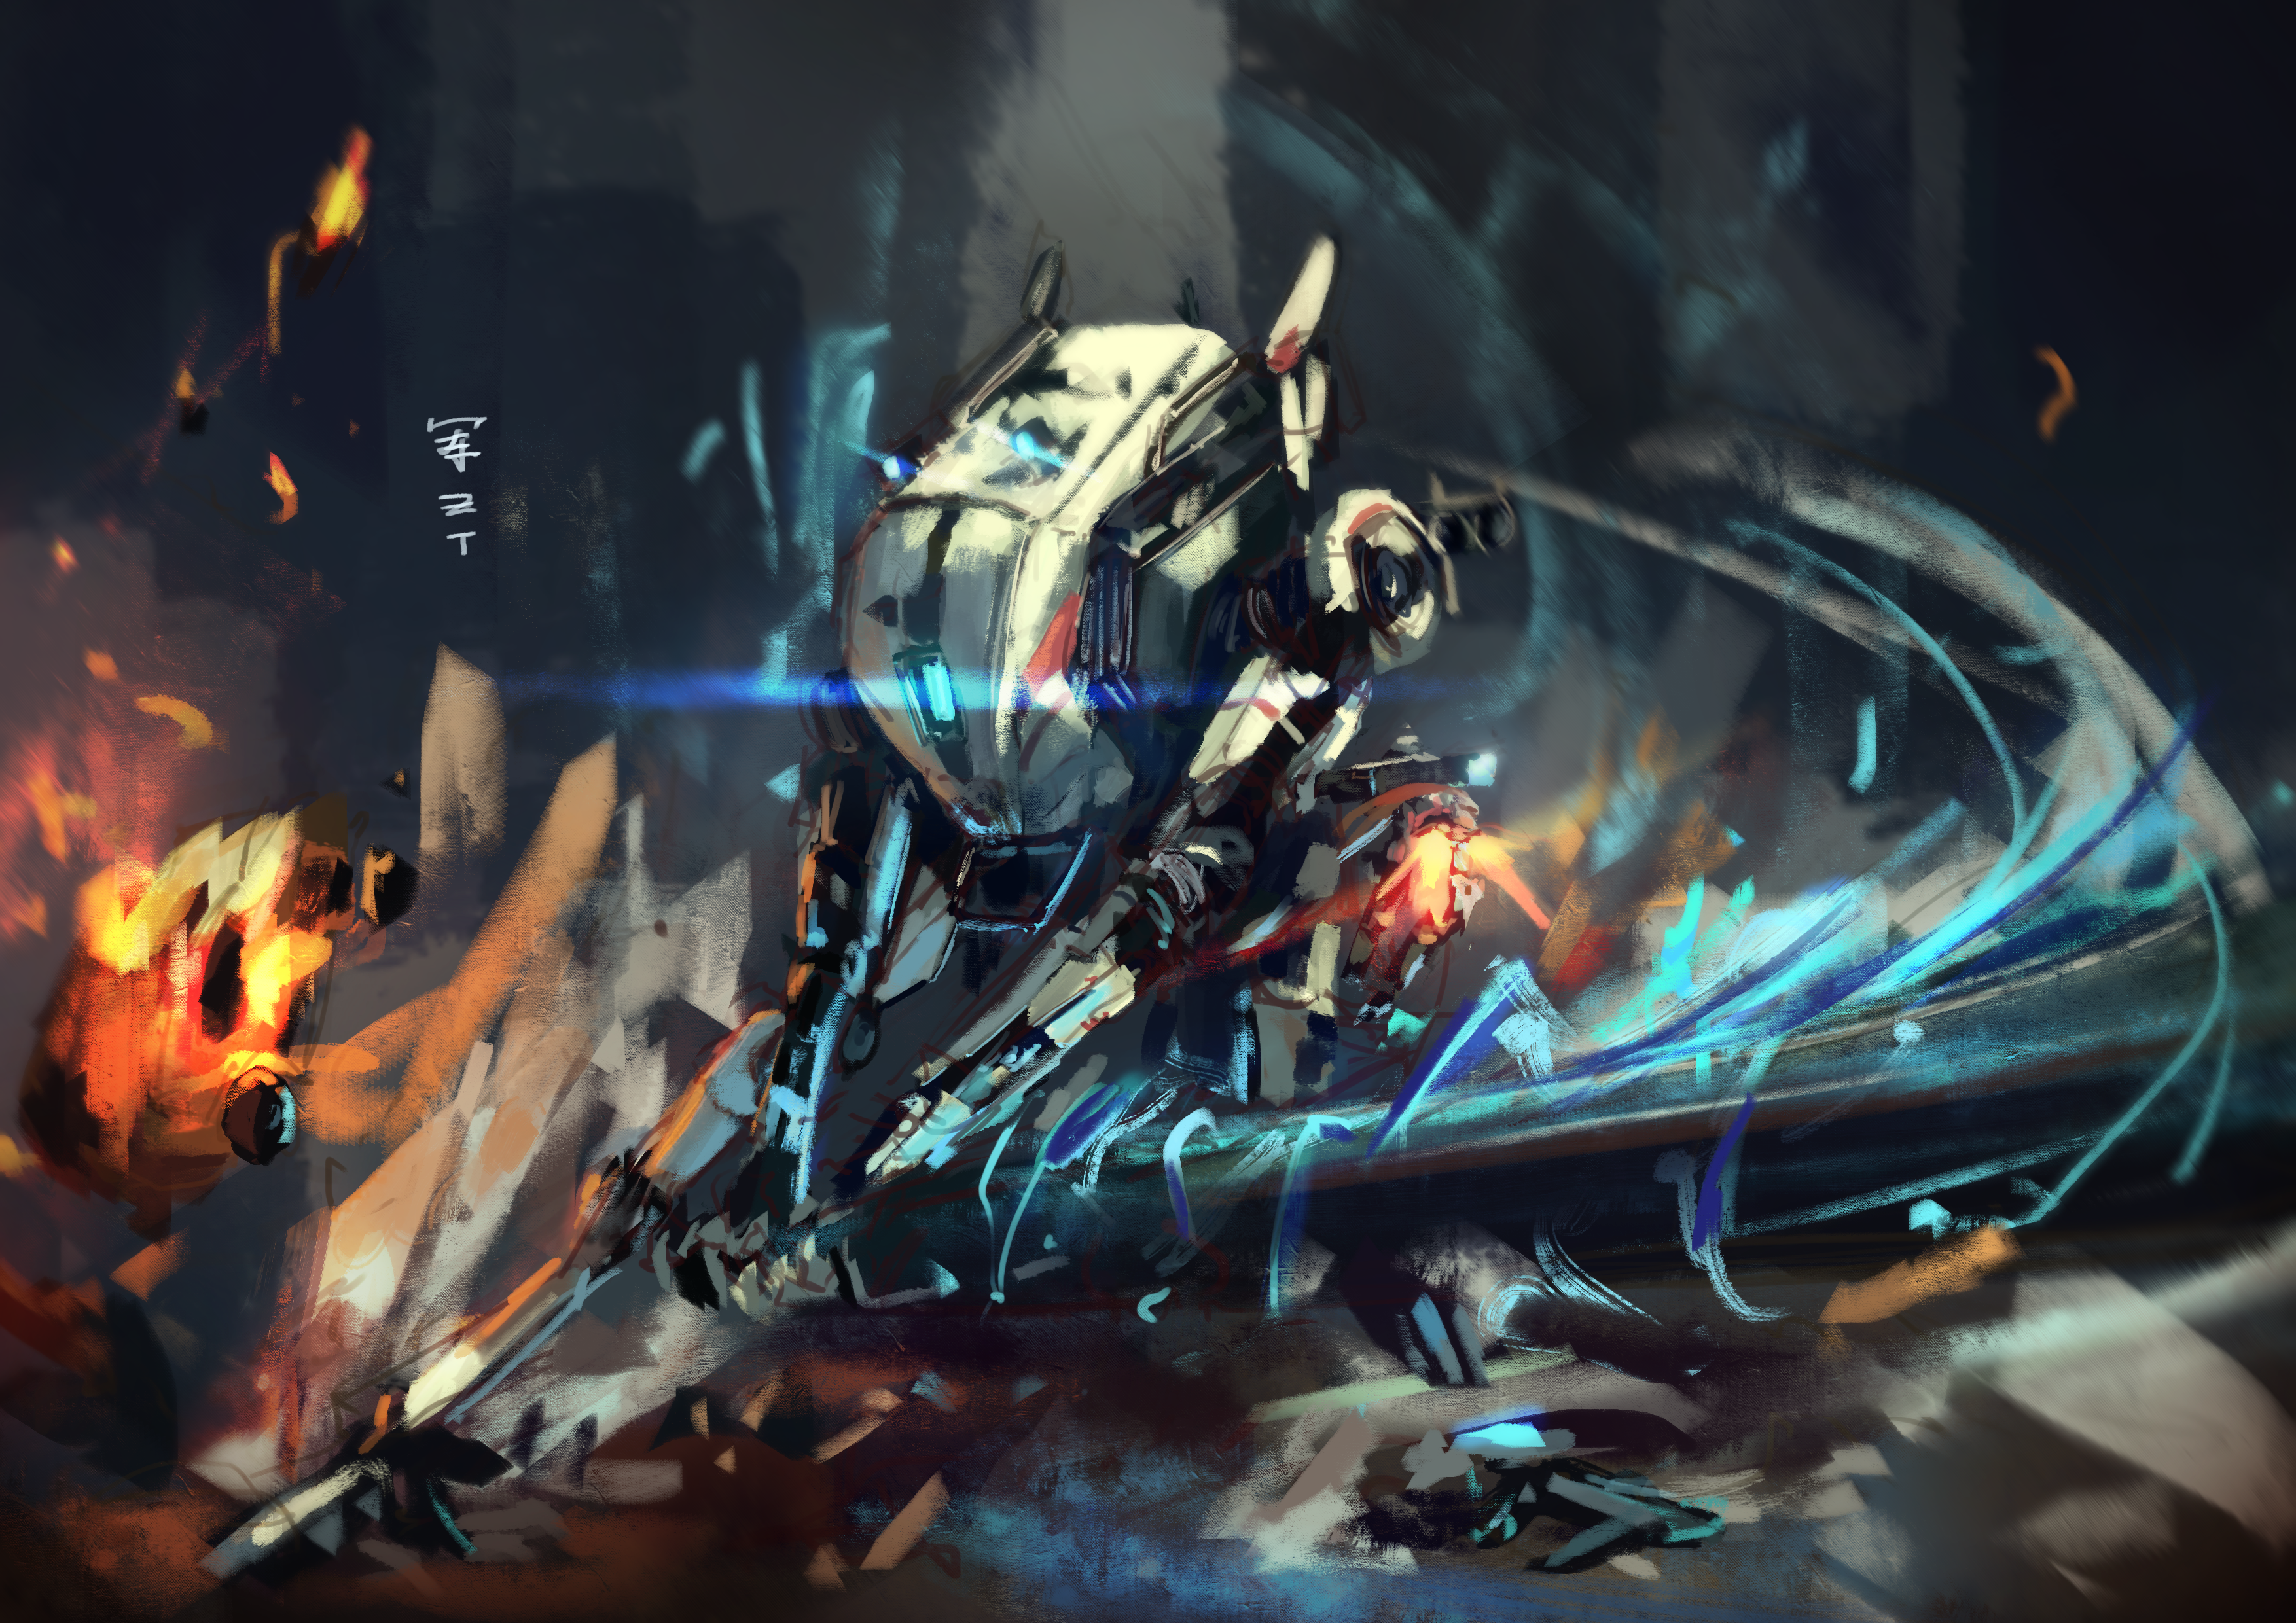 Sword core online! Painted a ronin fan illustration